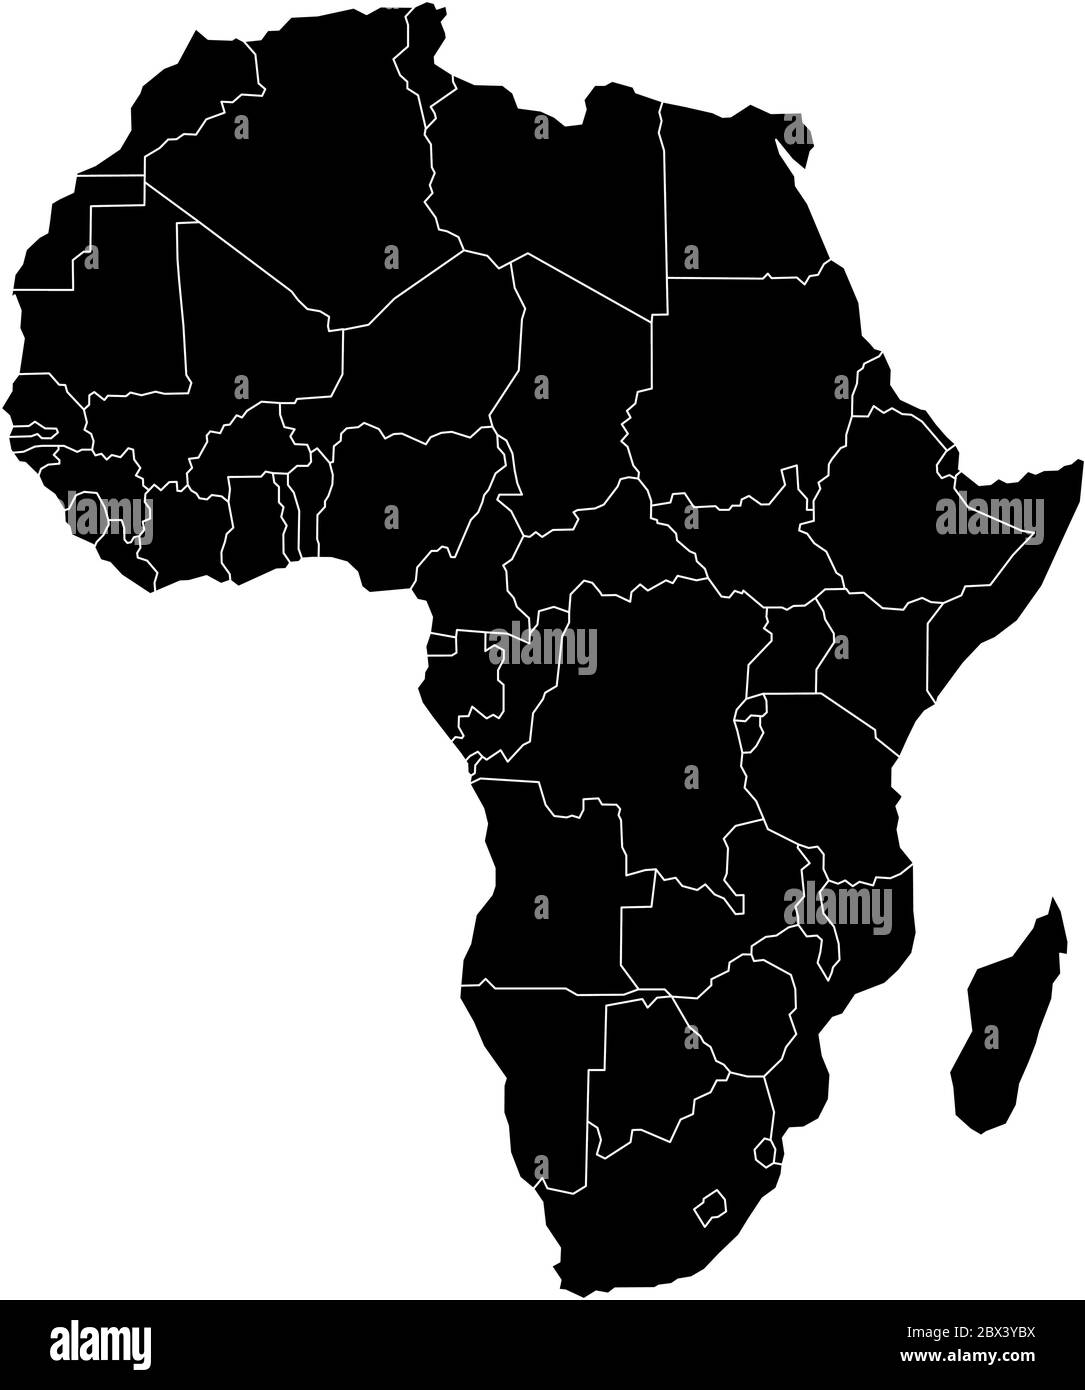 Carte simple et plate noire du continent africain avec frontières nationales isolées sur fond blanc. Illustration vectorielle. Illustration de Vecteur